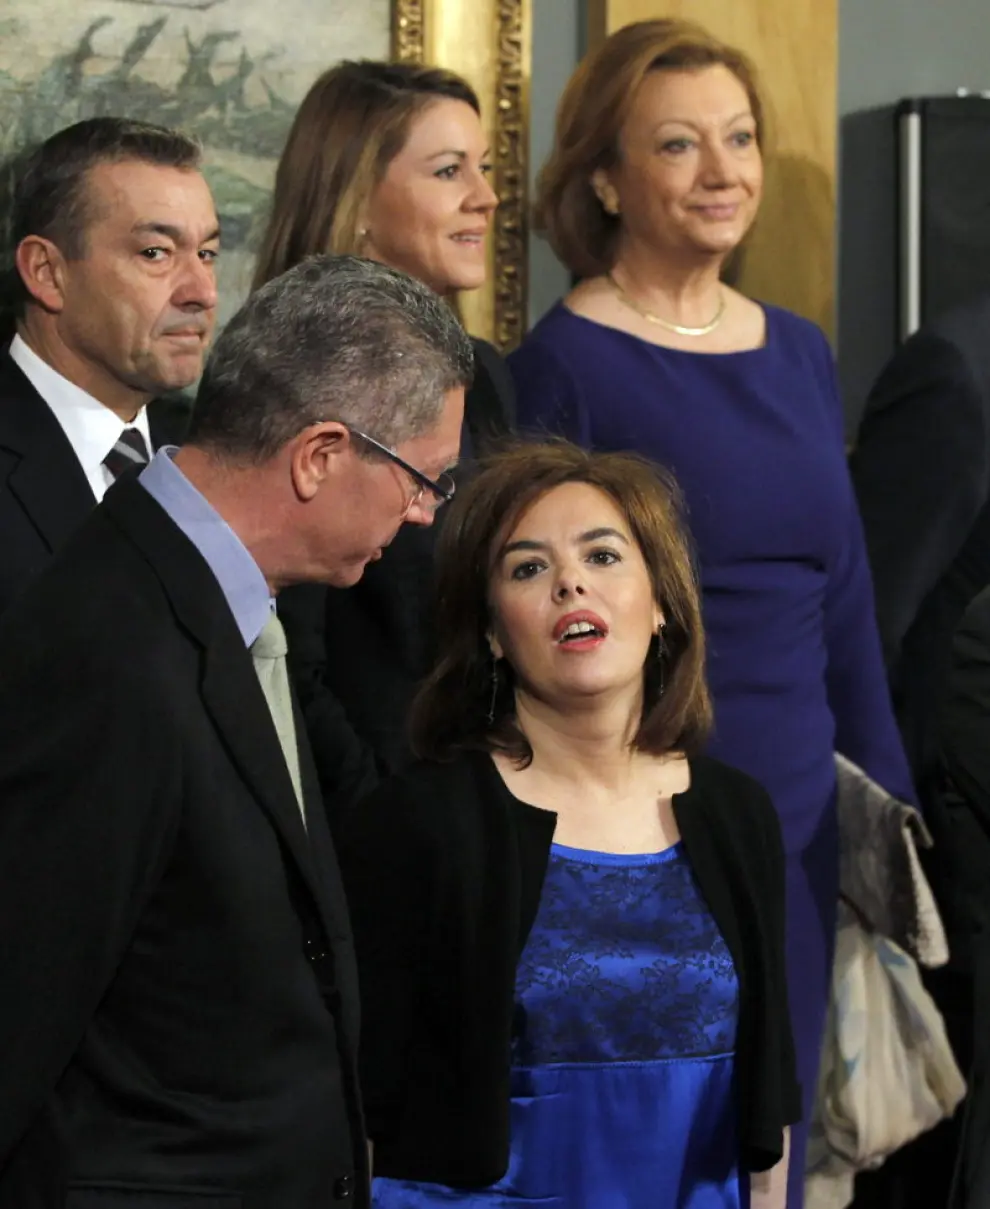 La vicepresidenta Soraya Sáenz de Santamaría, con el ministro de Justicia, Alberto Ruíz-Gallardón, junto a la presidenta autonómica de Aragón, Luisa Fernanda Rudi